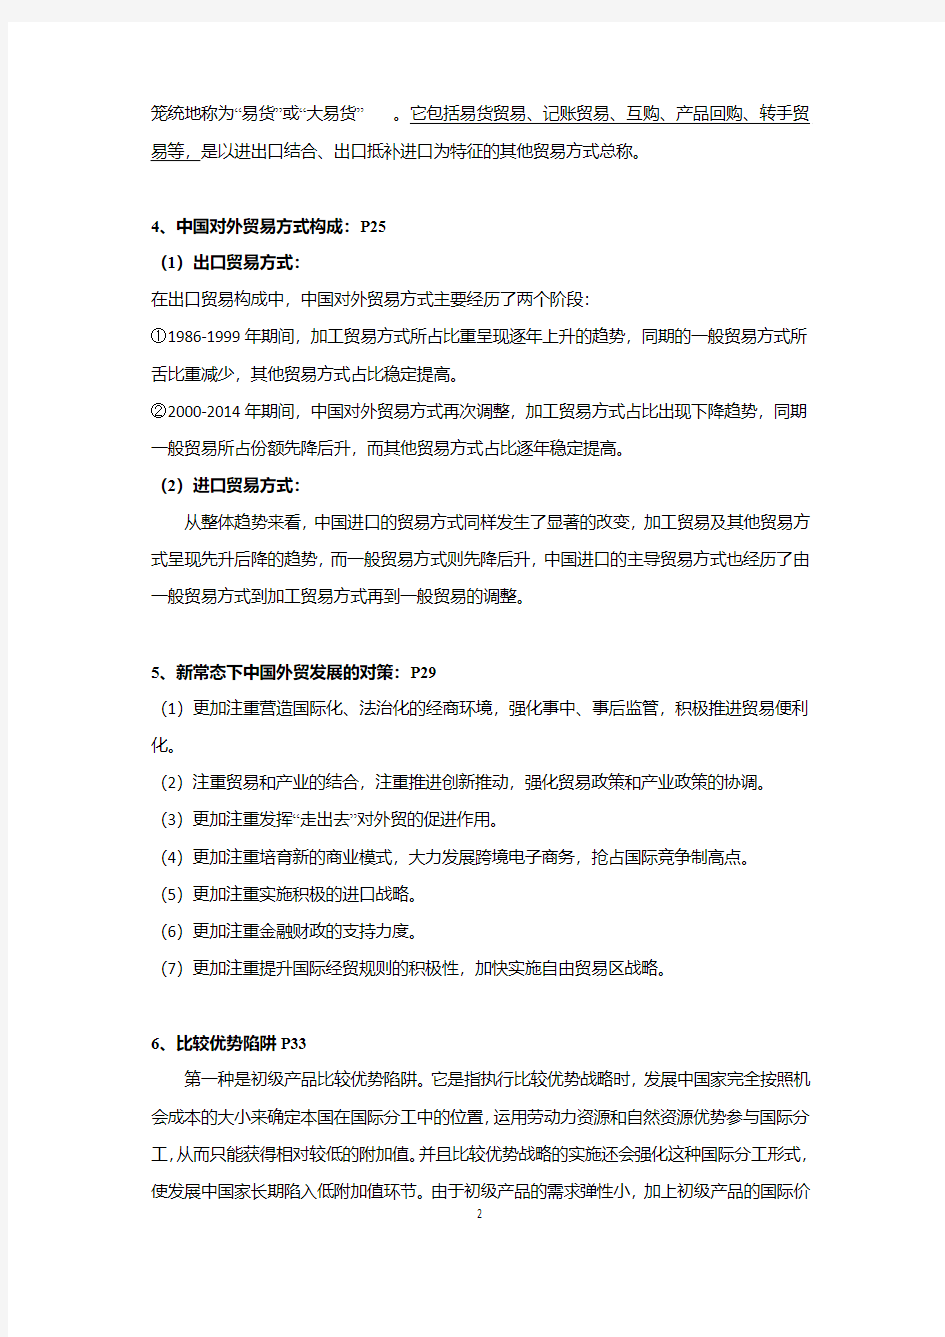 南京财经大学中国对外贸易概论(考试重点)